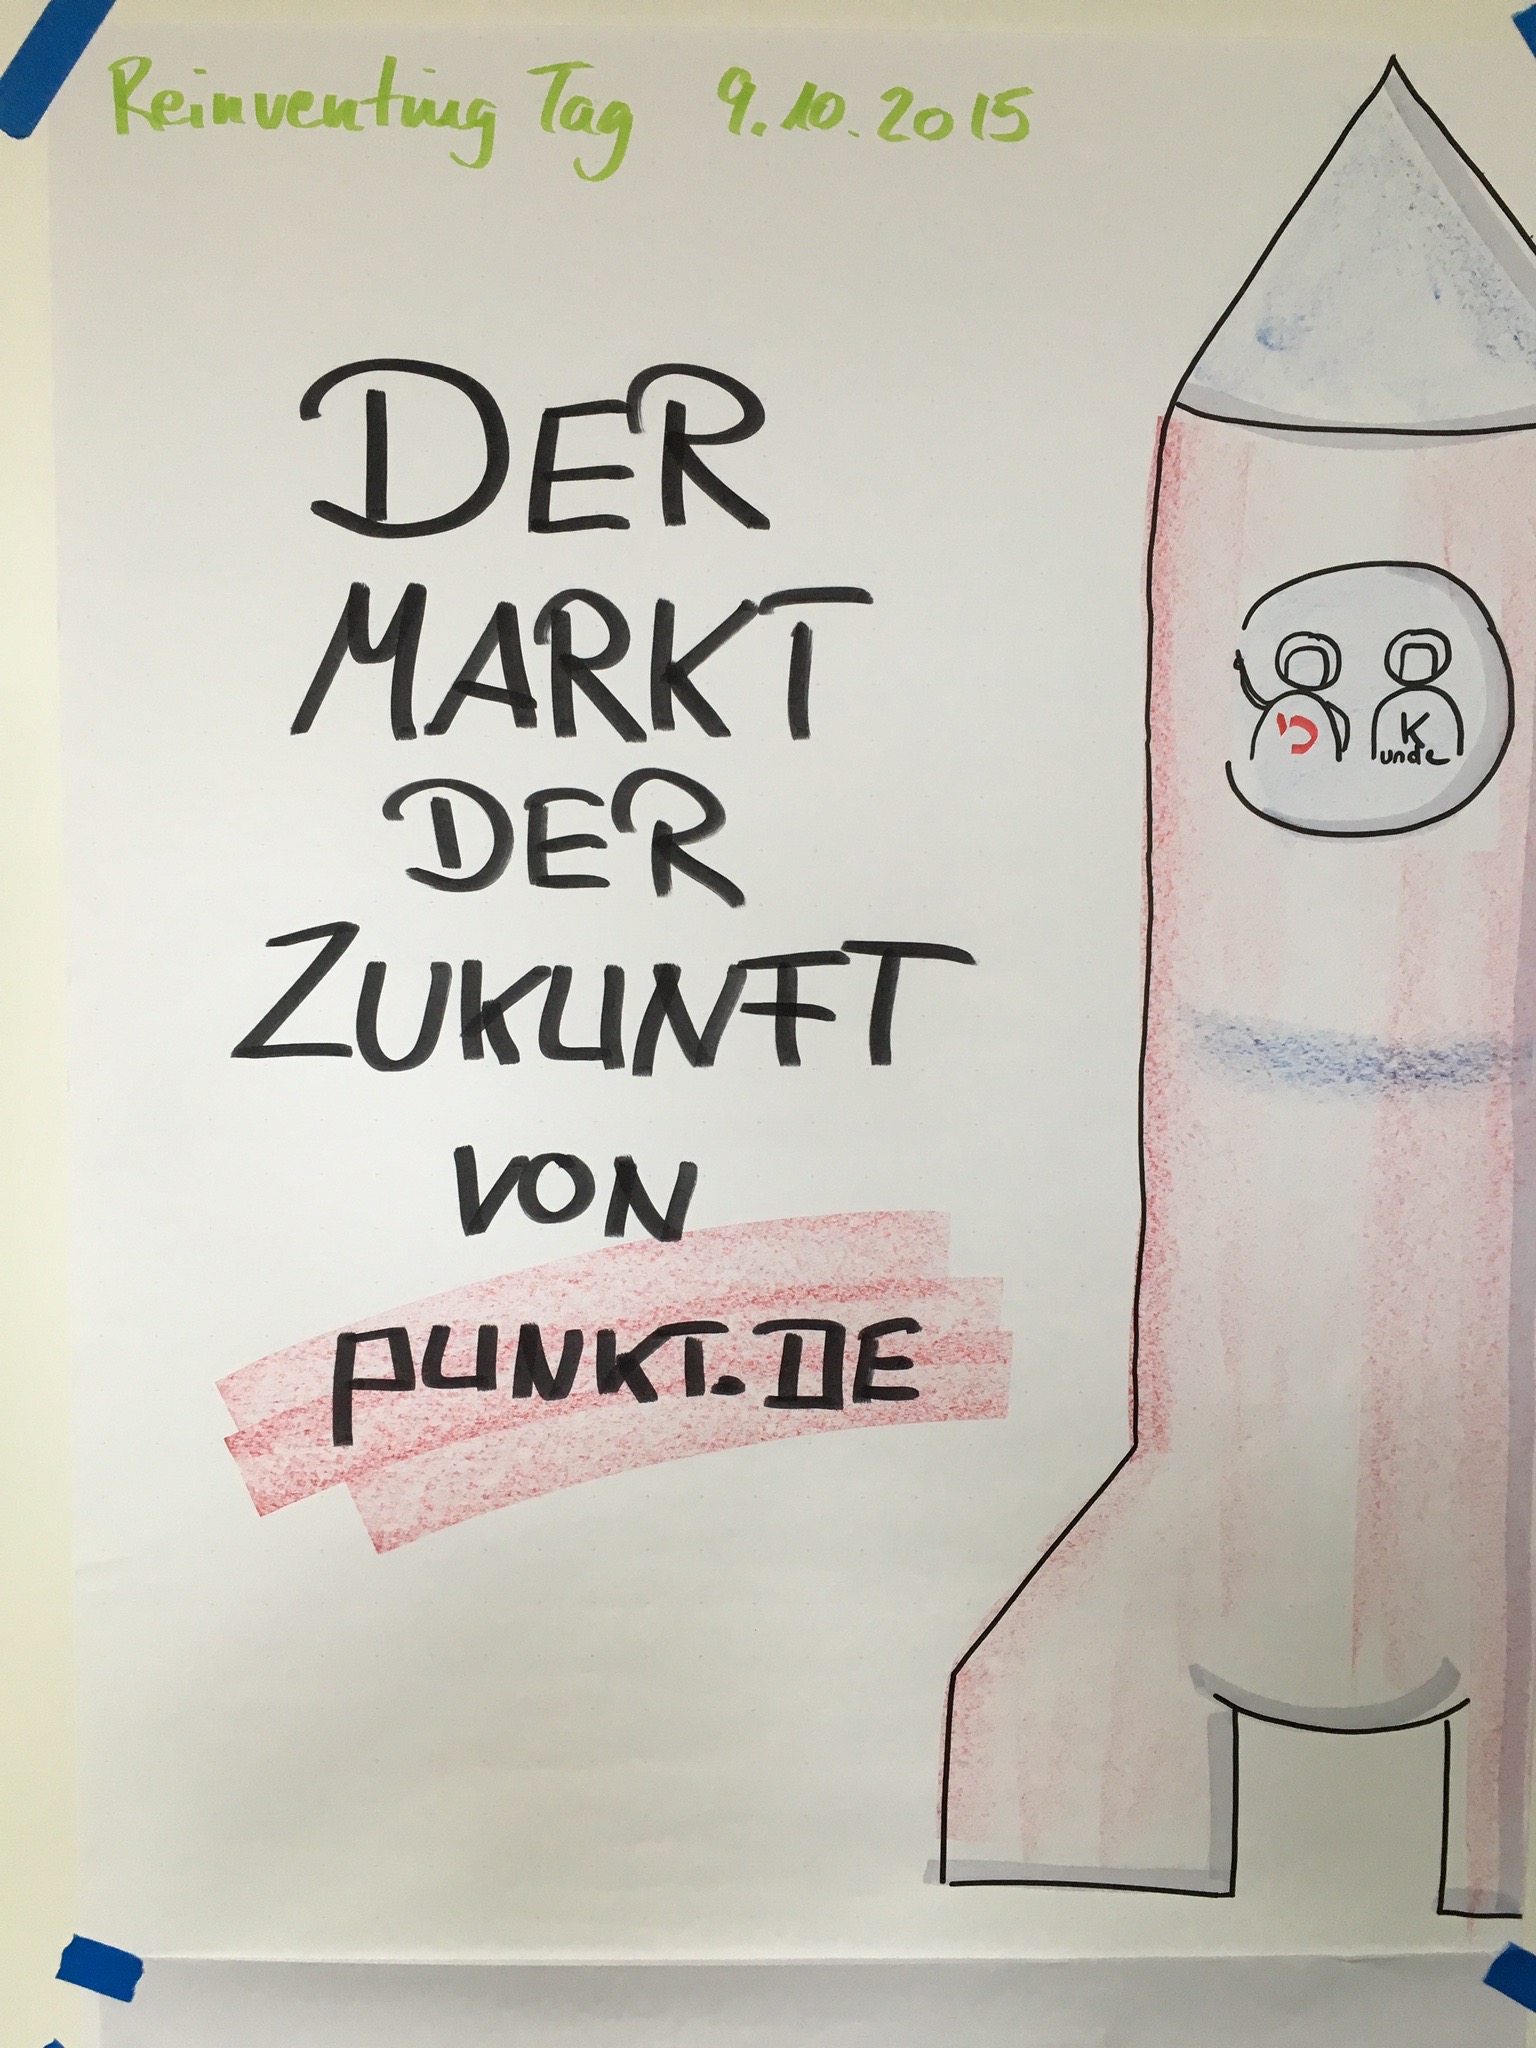 Foto des Plakats vom Reinventing Tag: Der Markt der Zukunft von punkt.de